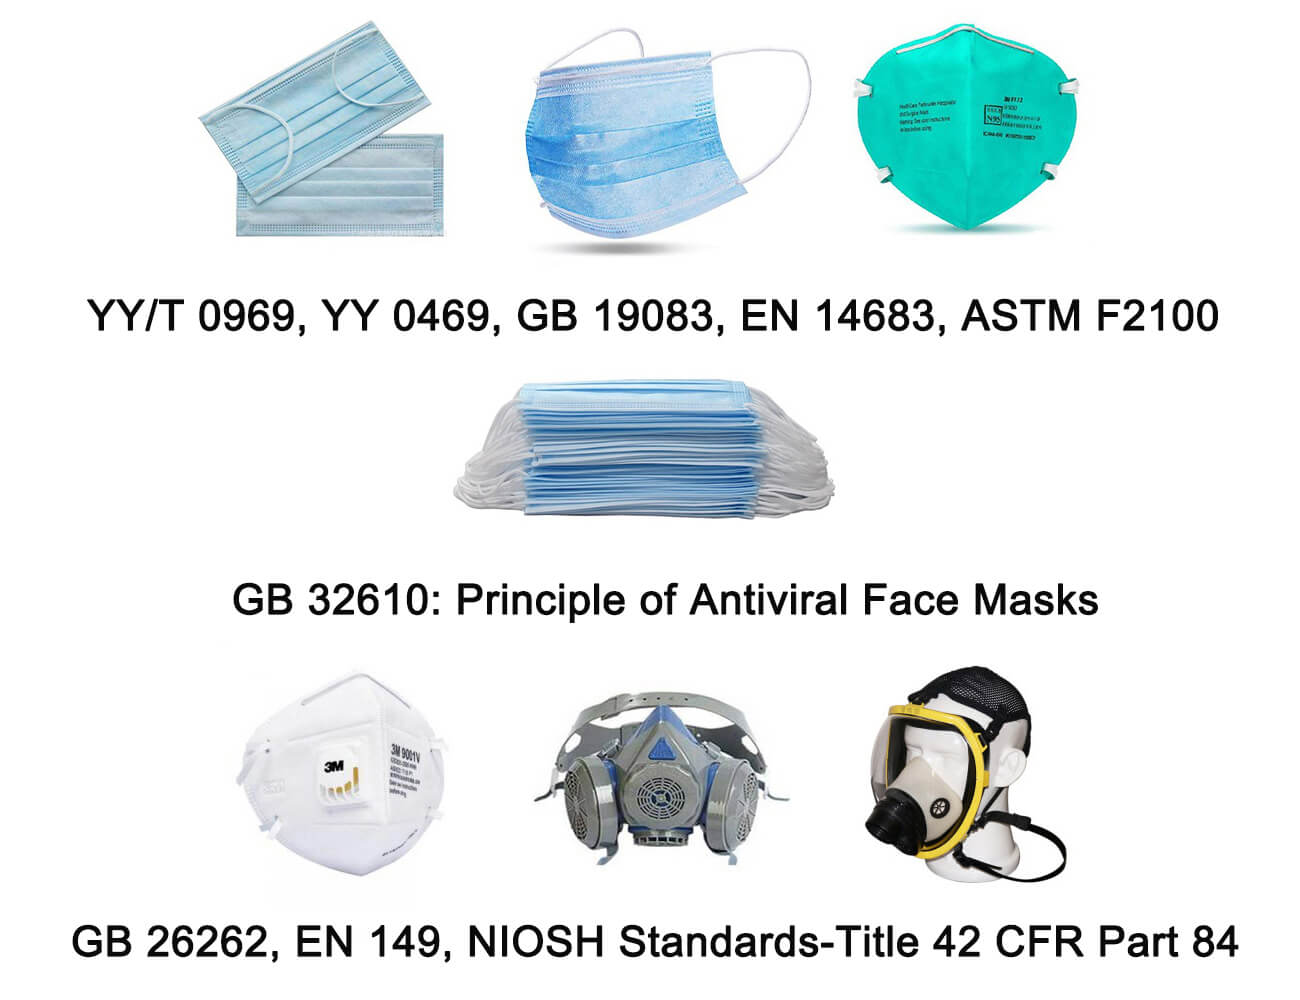 antiviral face masks principle